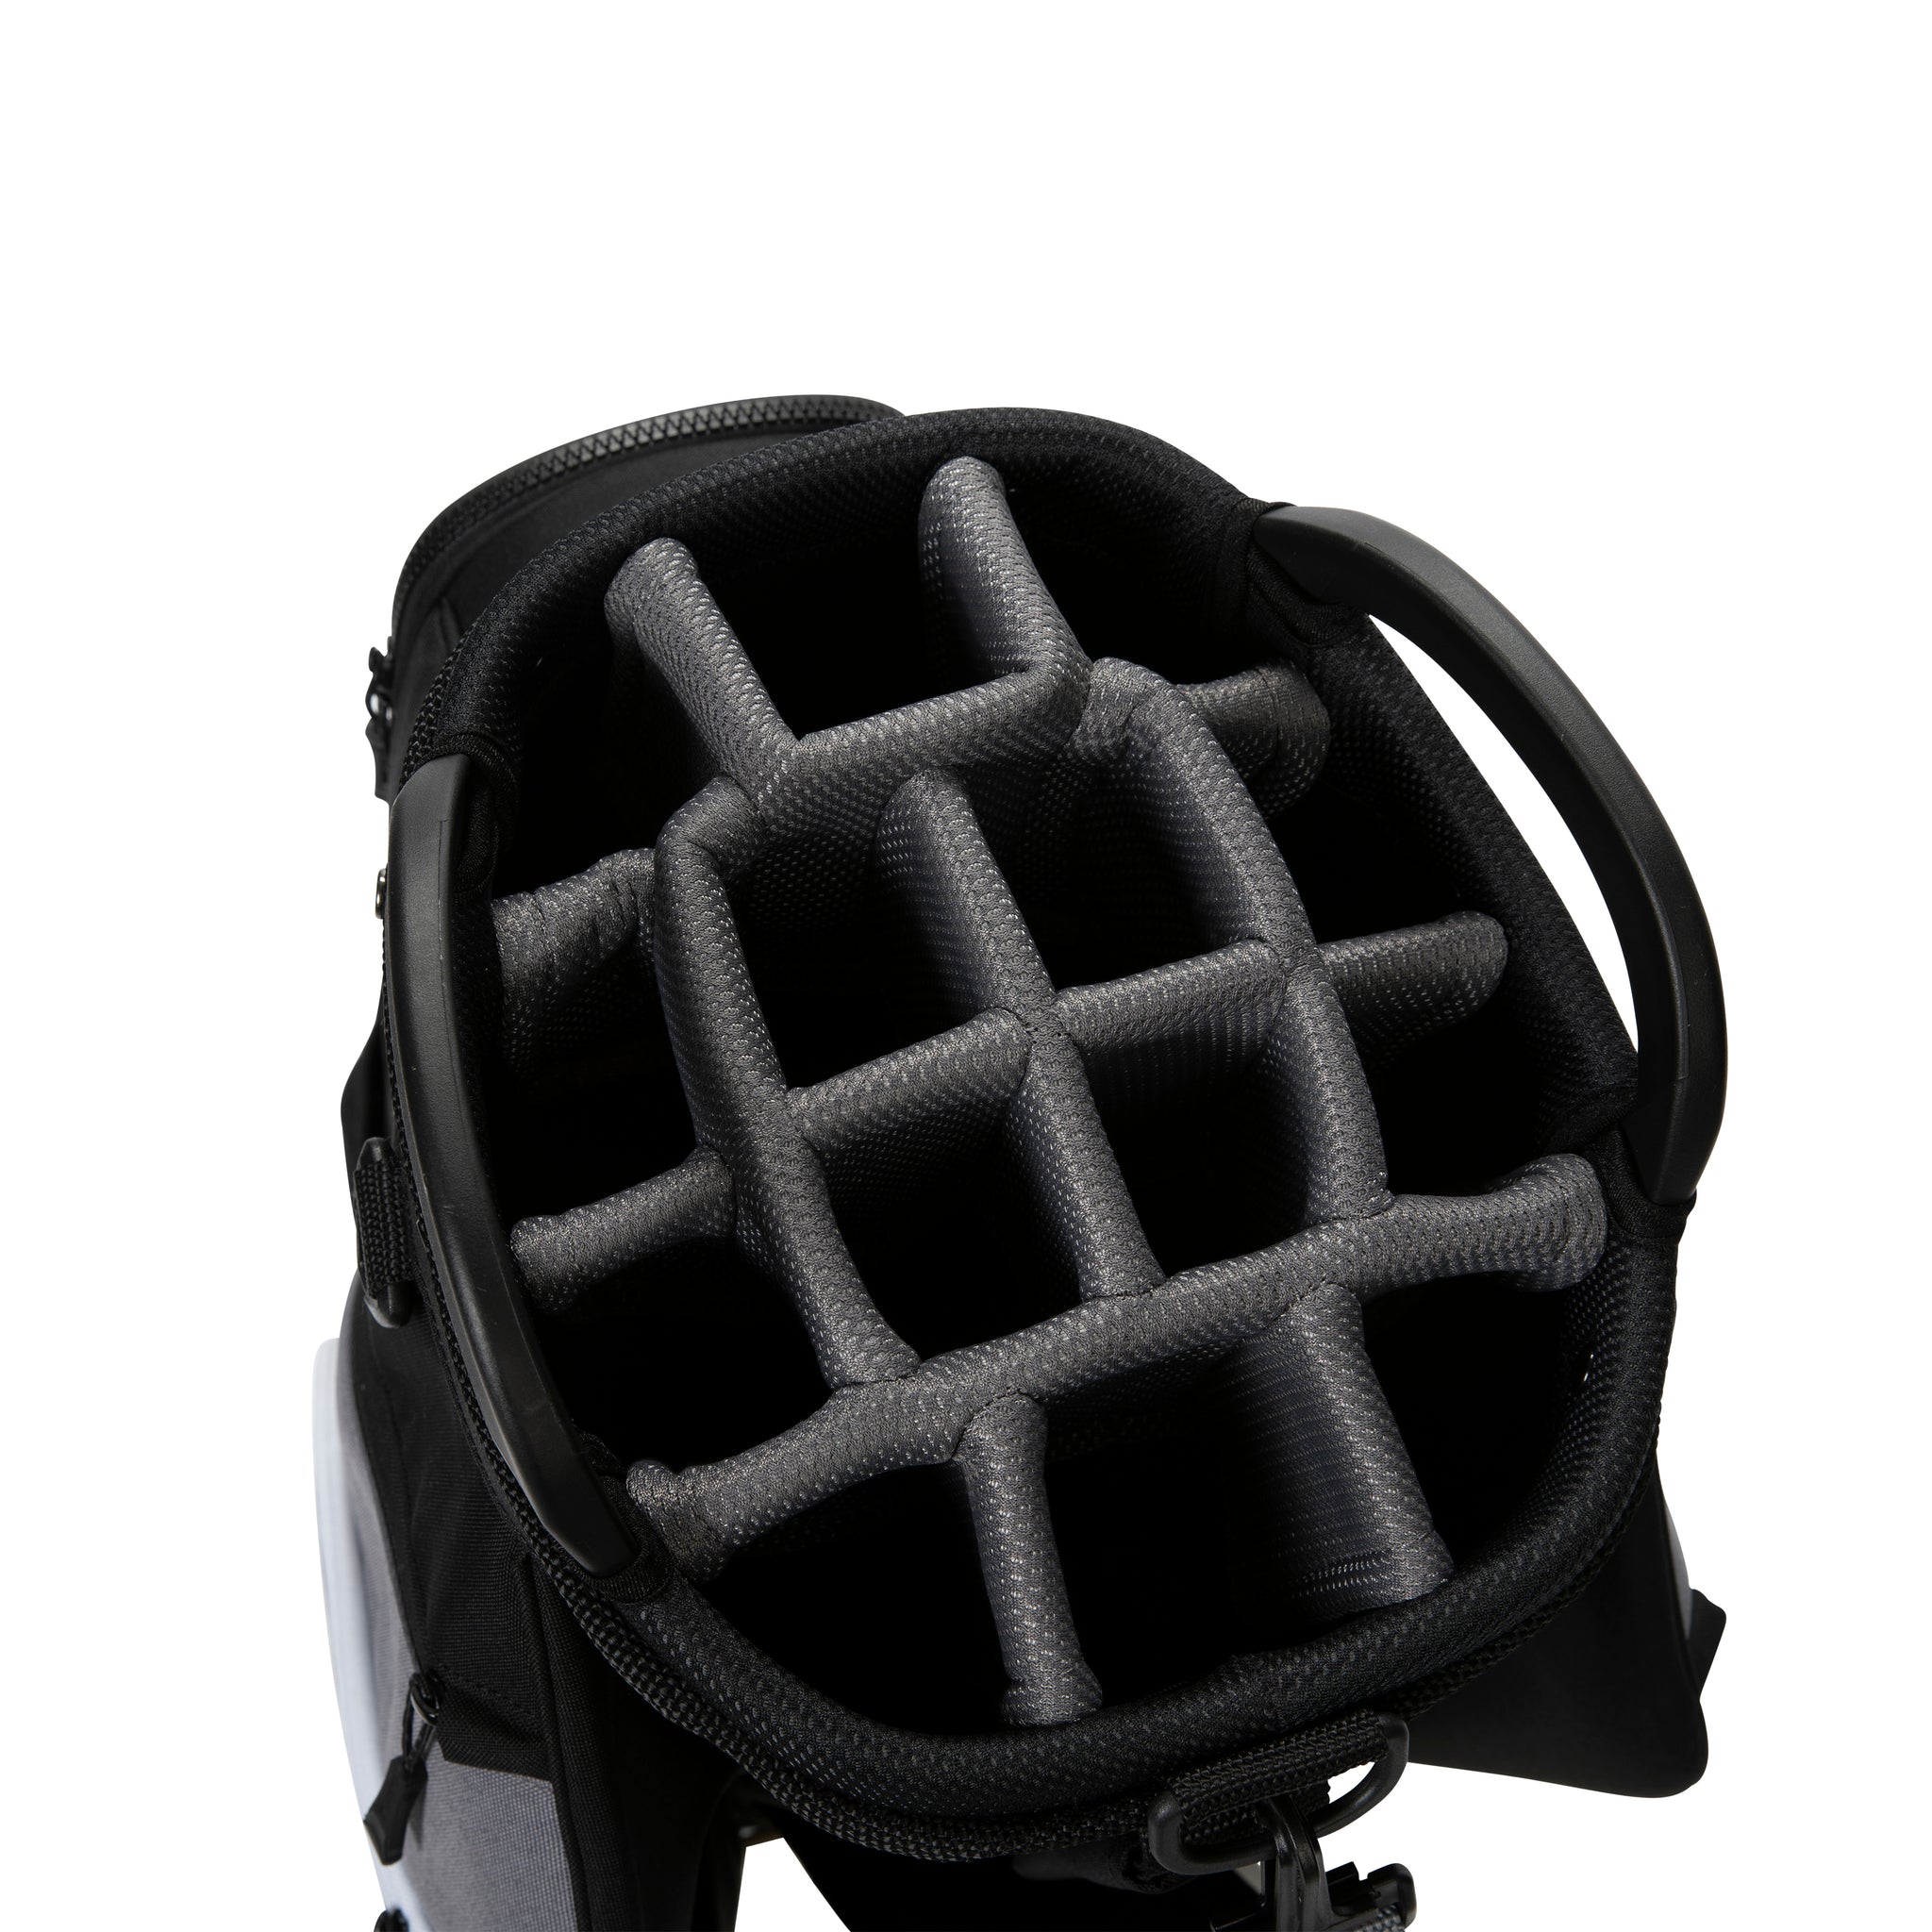 cobra-golf-ultralight-pro-cart-bag-909528-black-white-08